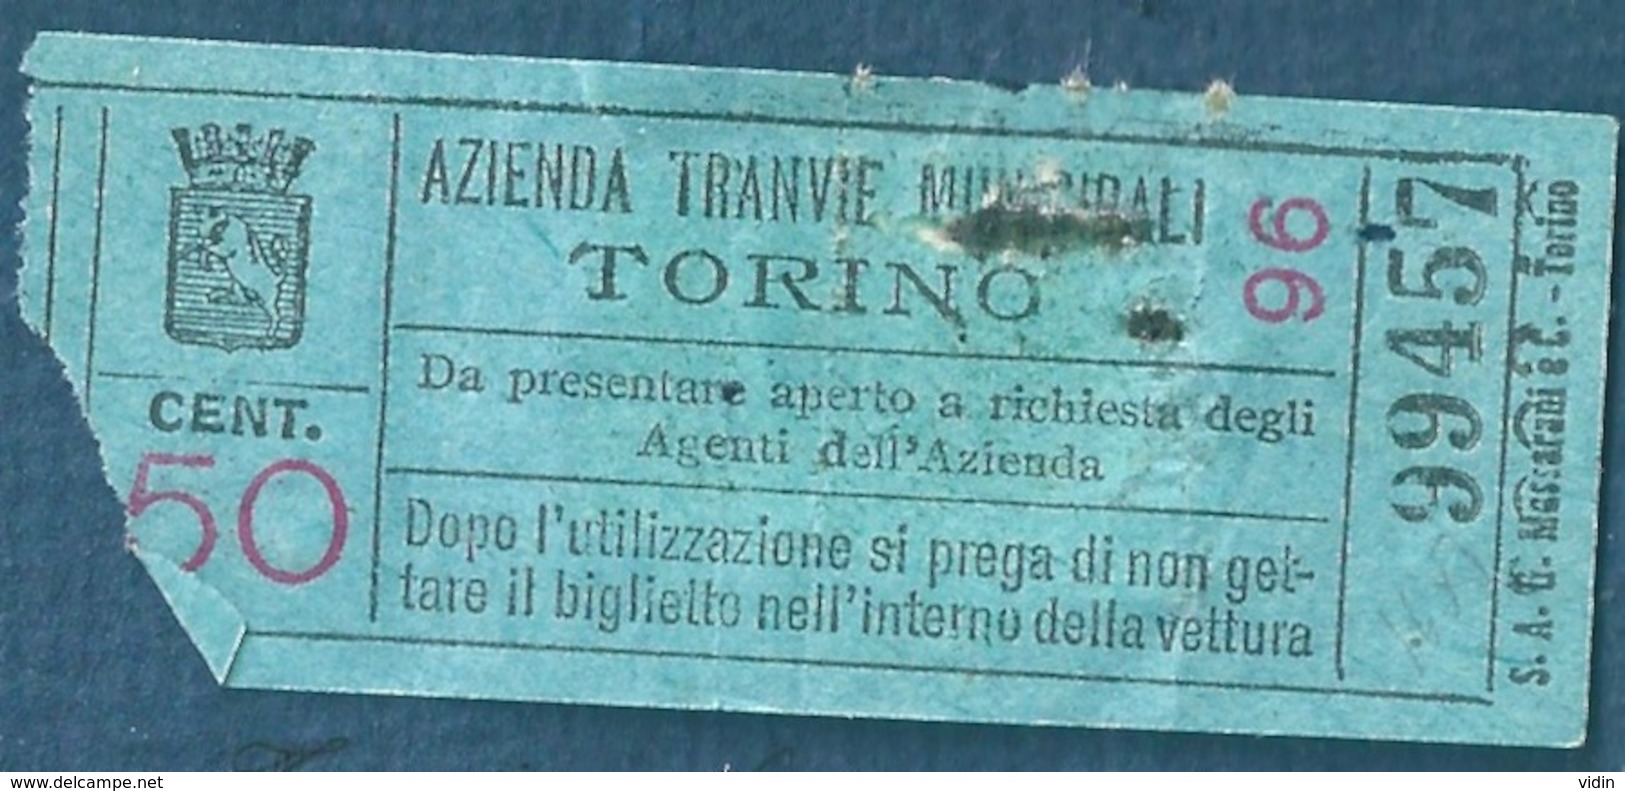 Italie ITALIA Lot de titres de transport Tramway 1927